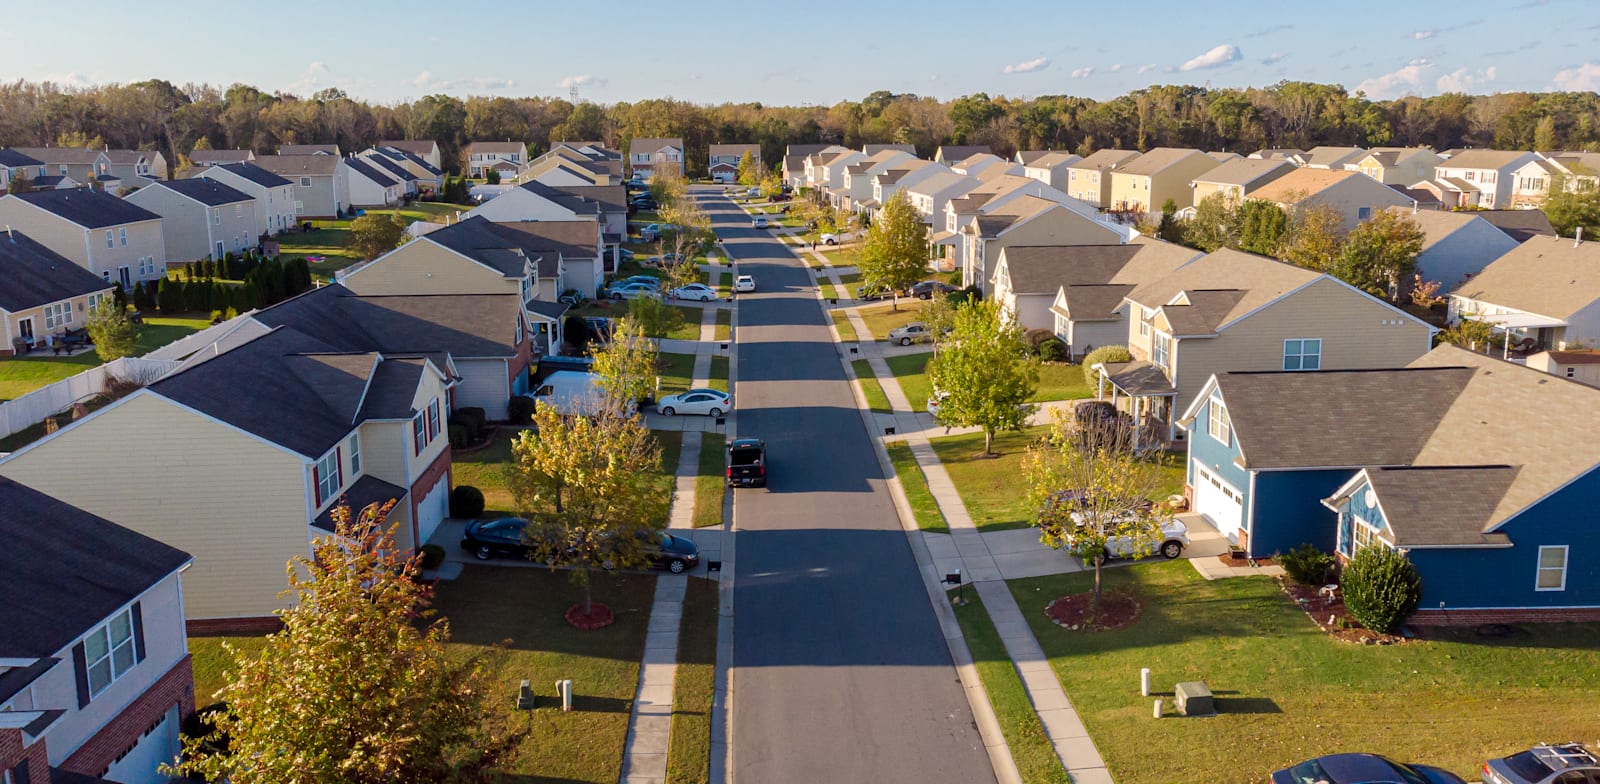 סוכנויות ממשלתיות לא לוקחות מחירי בתים בחשבון באופן ישיר כשהן מחשבות אינפלציה / צילום: Shutterstock, Gus Valente